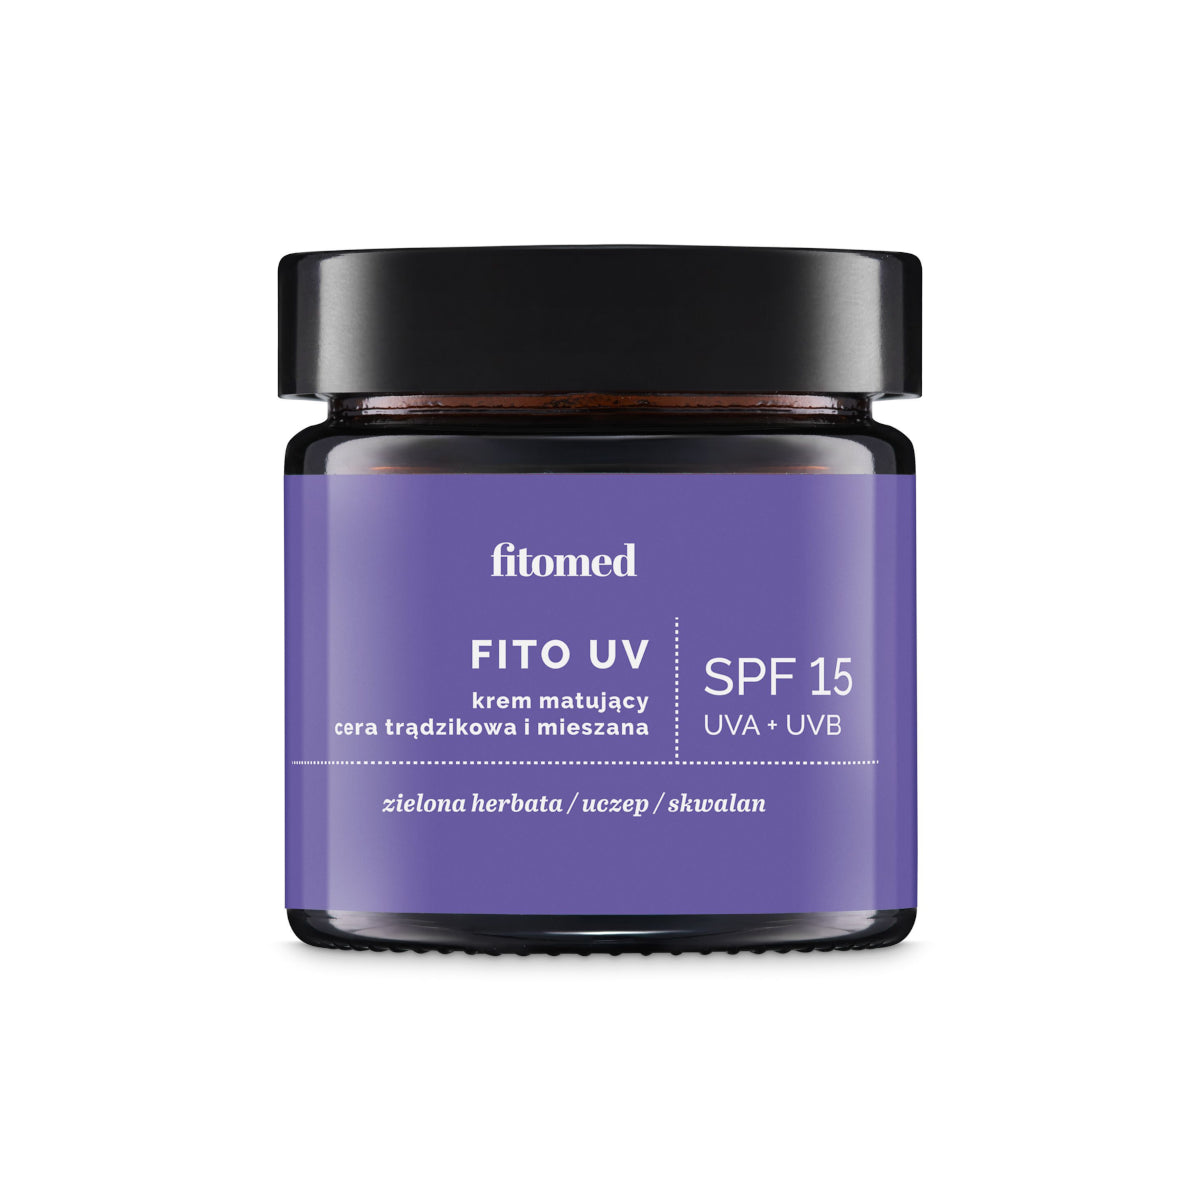 FITO UV-Mattierungscreme SPF15 für Akne und Mischhaut 50 ml FITOMED